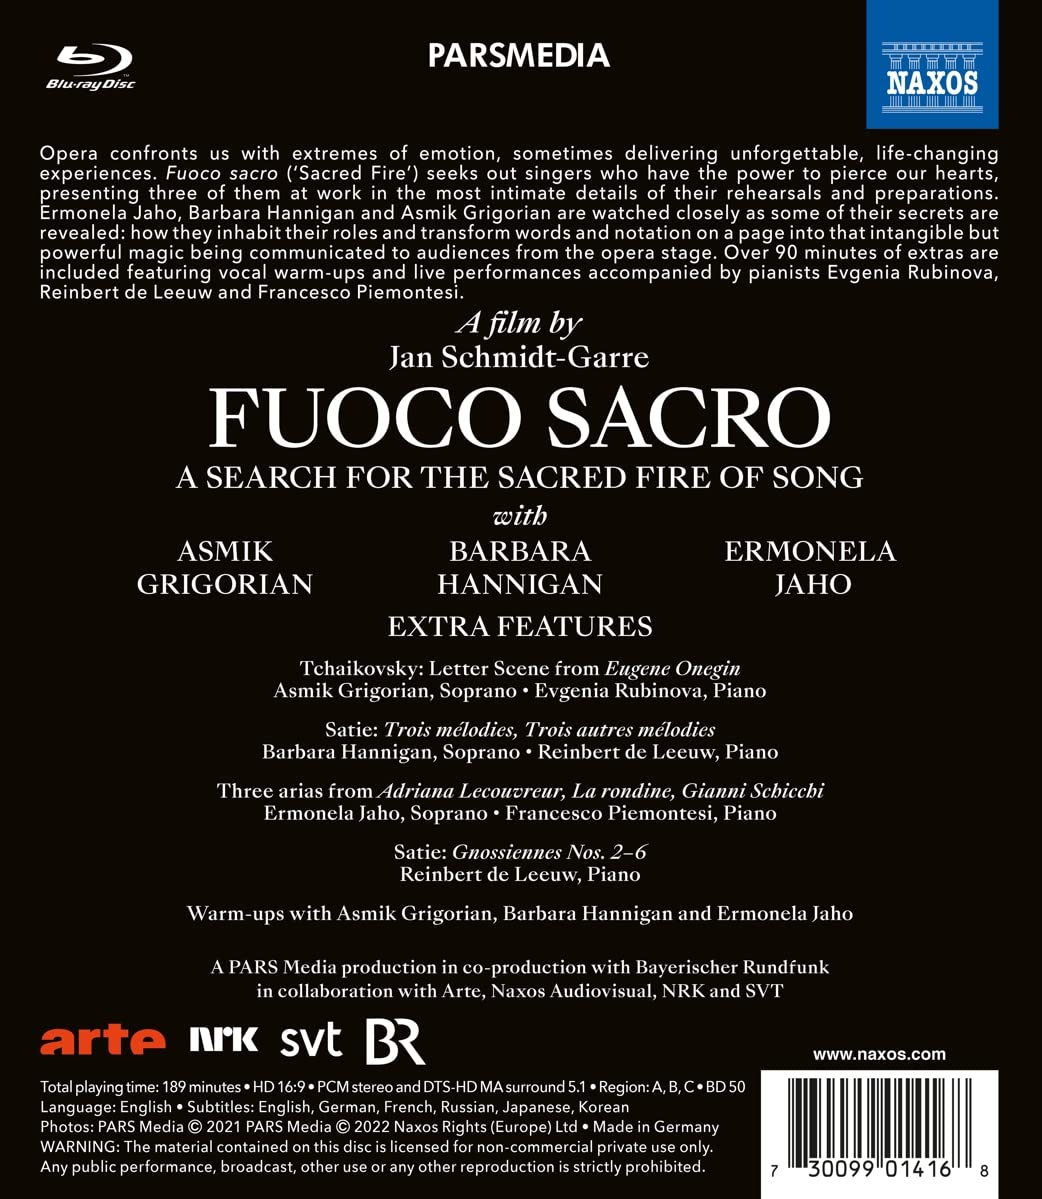 성악가 다큐멘터리 '신성한 노래의 불꽃' (Fuoco Sacro - A Search For The Sacred Fire Of Song)